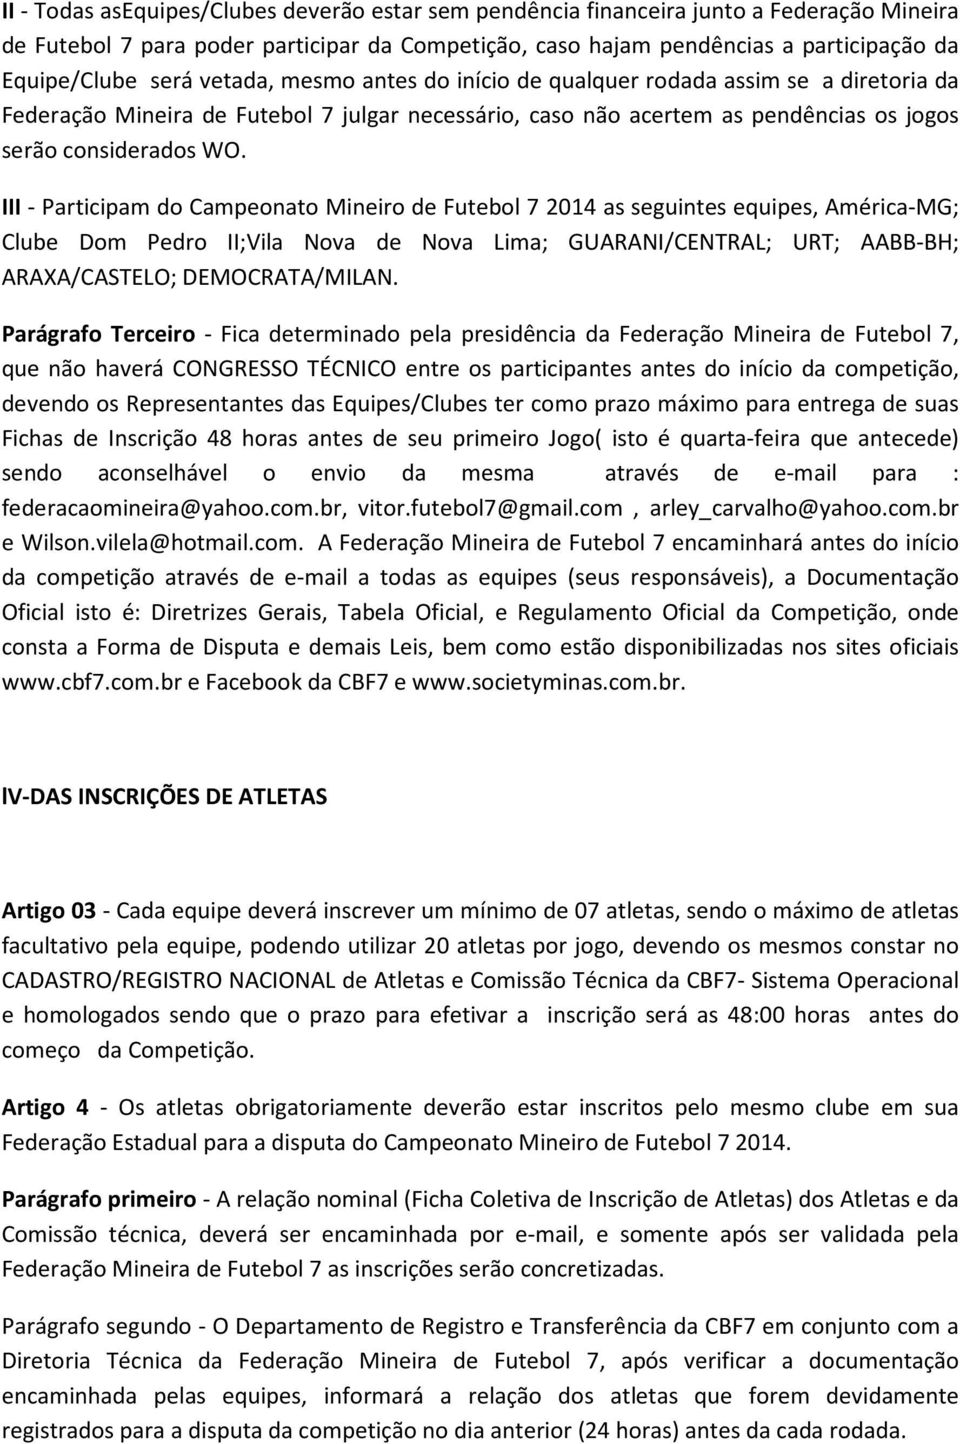 III - Participam do Campeonato Mineiro de Futebol 7 2014 as seguintes equipes, América-MG; Clube Dom Pedro II;Vila Nova de Nova Lima; GUARANI/CENTRAL; URT; AABB-BH; ARAXA/CASTELO; DEMOCRATA/MILAN.